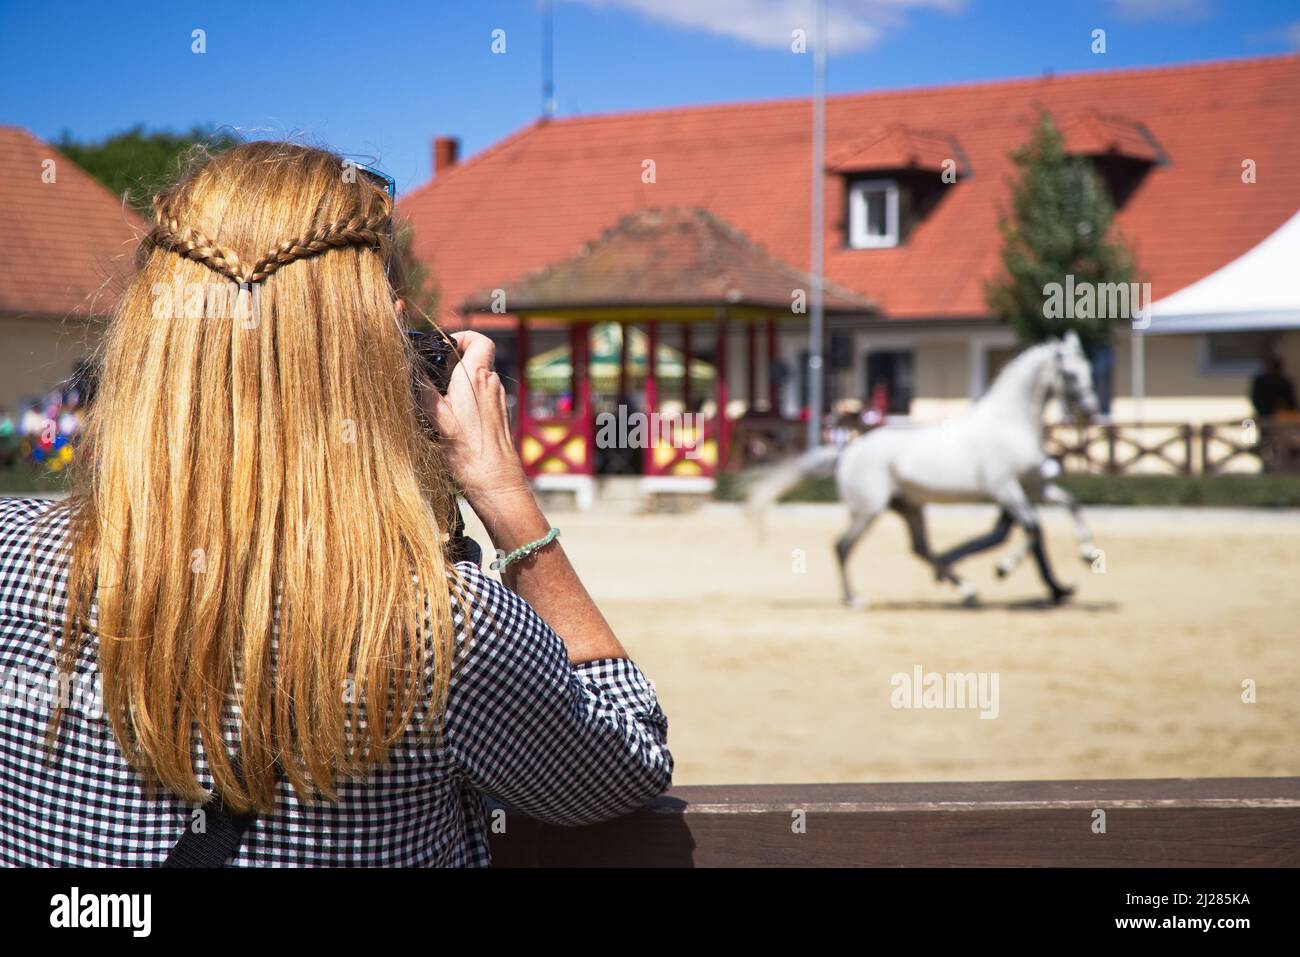 Mujer tomando una foto de caballo en el espectáculo de caballos. Fotógrafa en exposición de animales Foto de stock